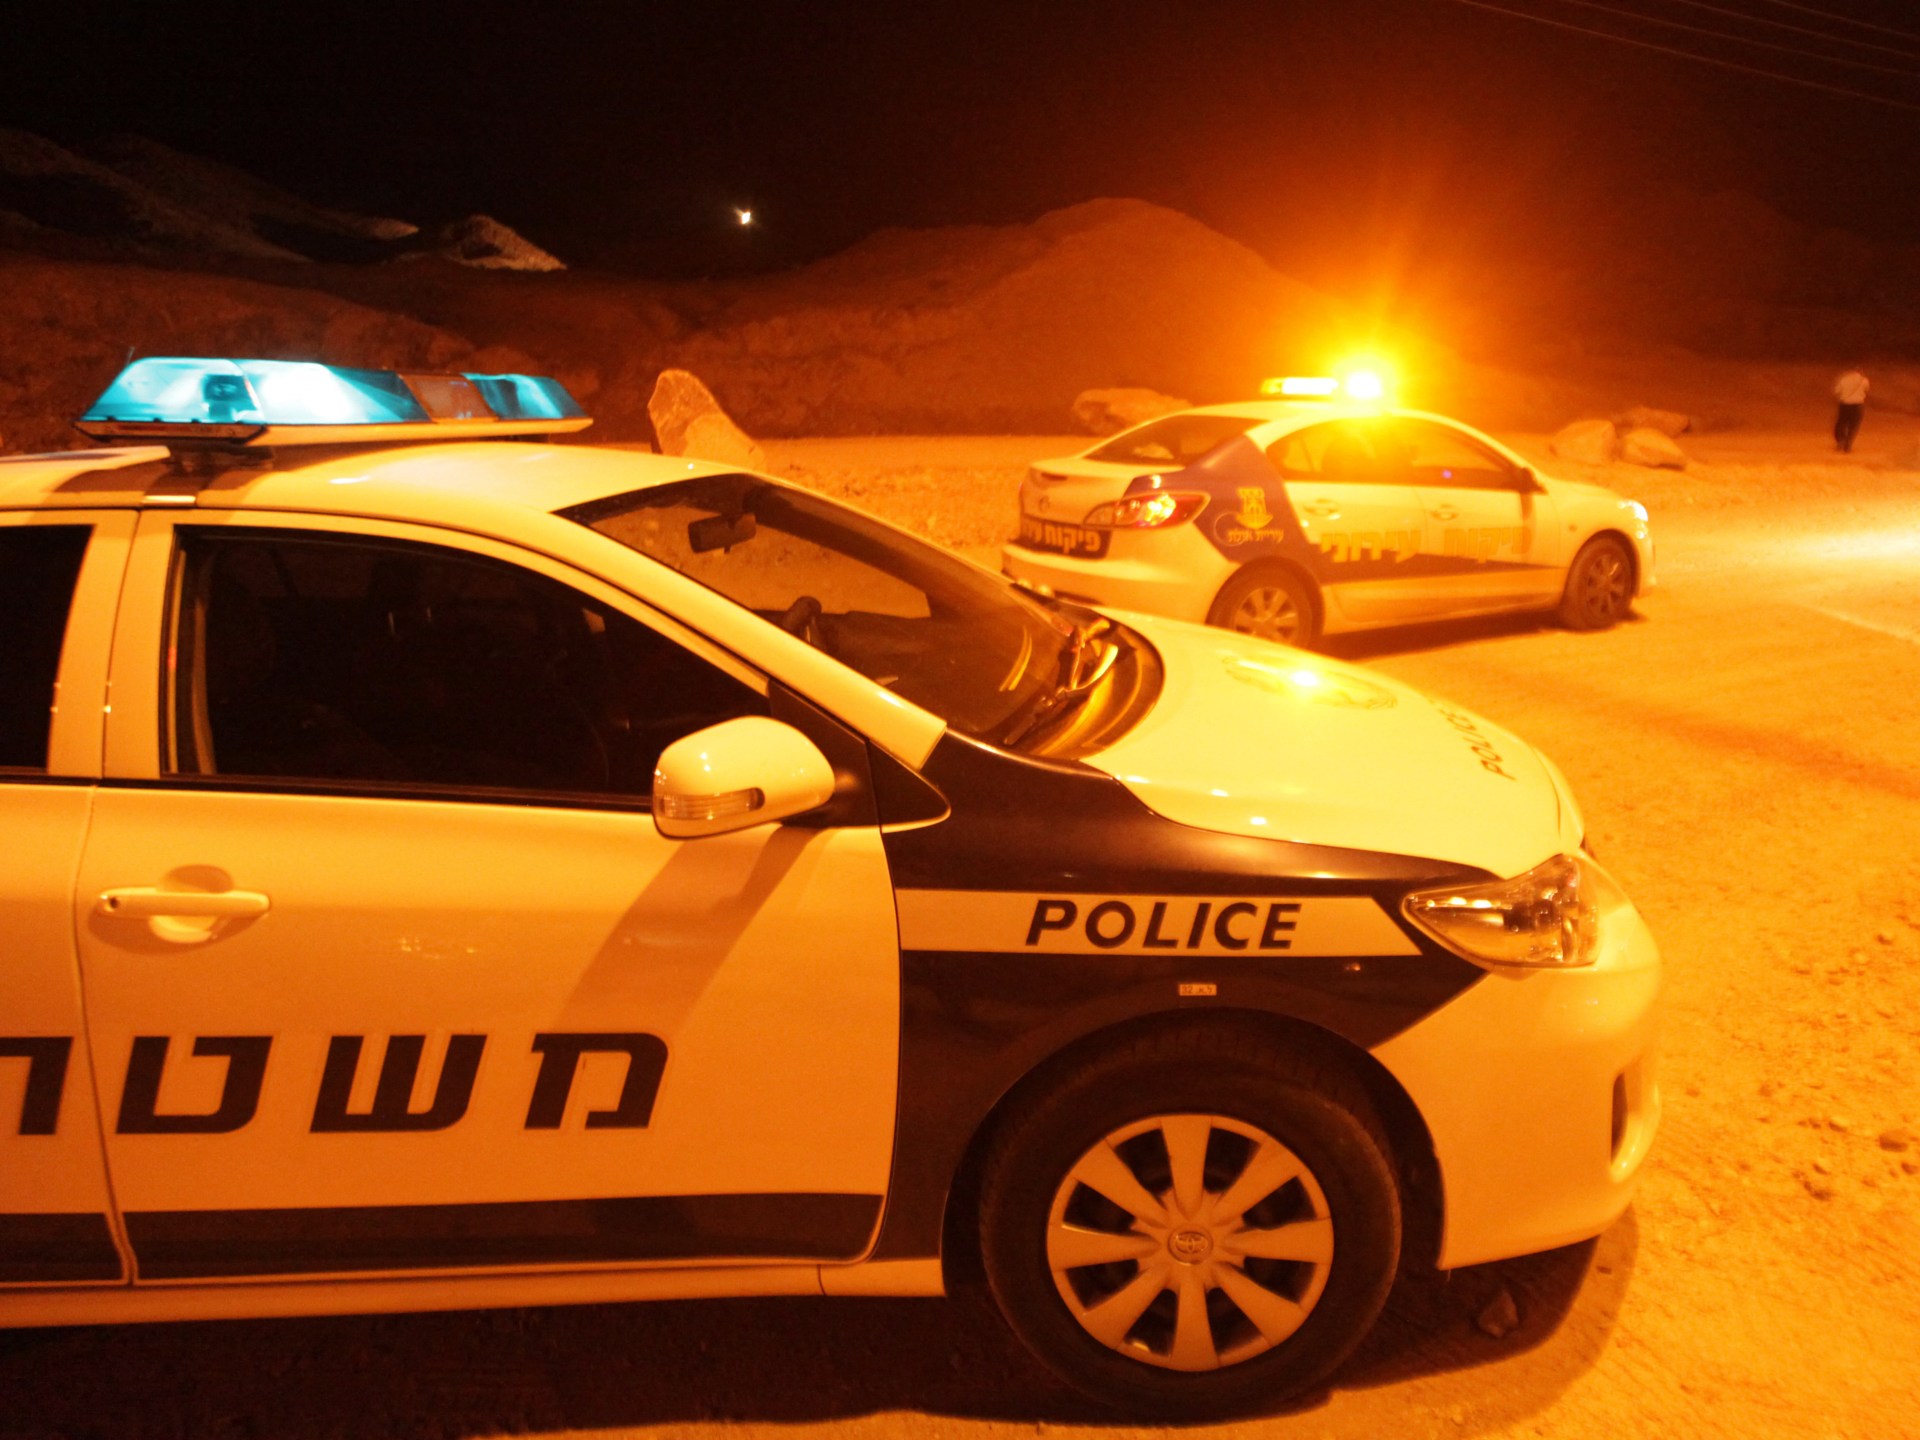 انفجار مسيّرة في إيلات وأنباء عن إصابة قاعدة إسرائيلية | أخبار – البوكس نيوز